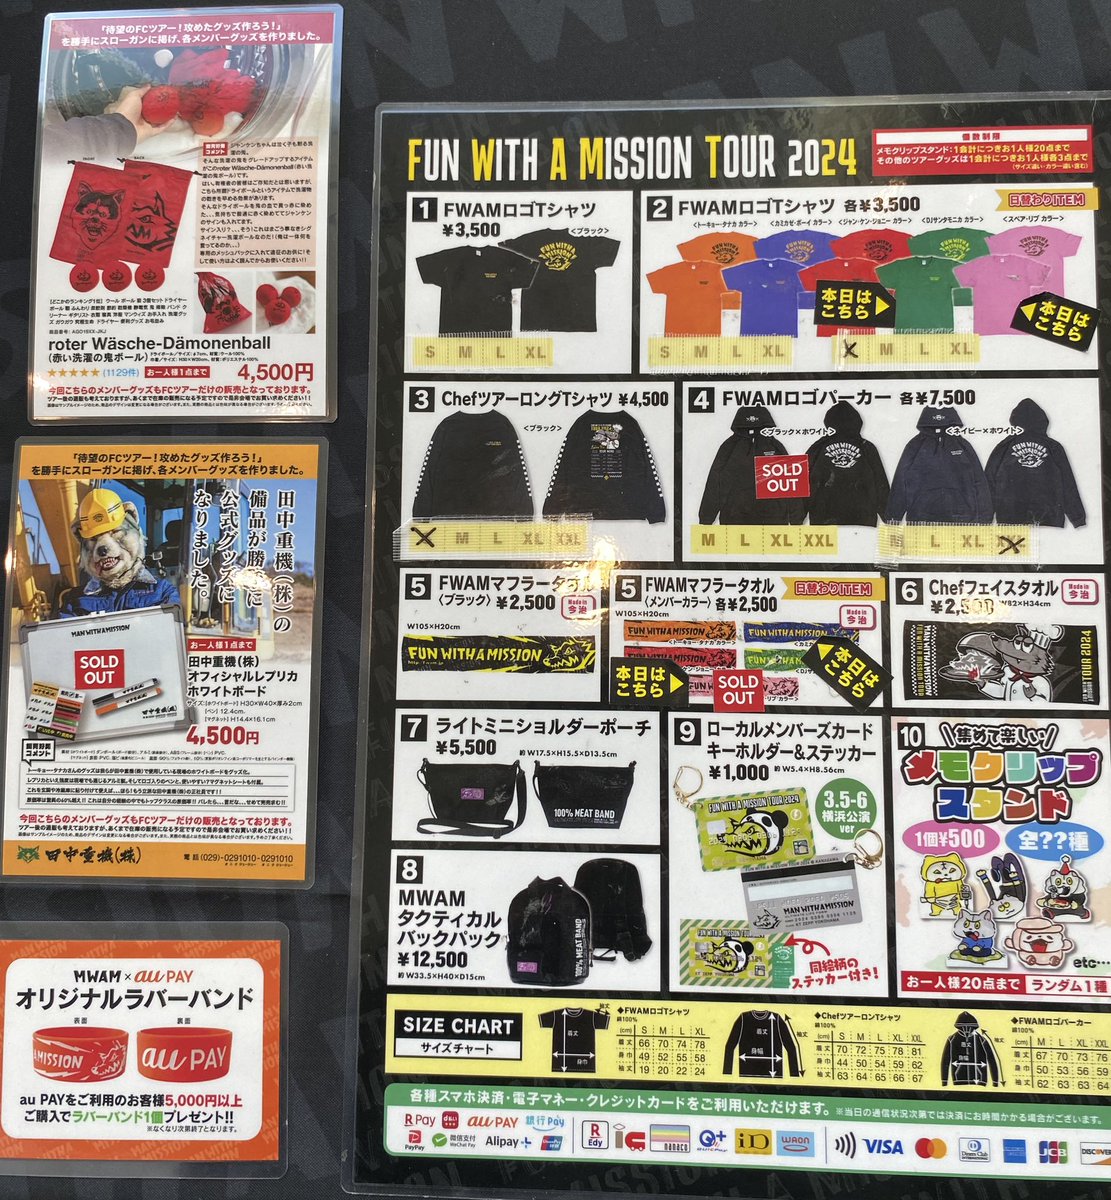 【FCツアー物販情報】 5月9日広島公演 ただいまの売り切れ情報です。